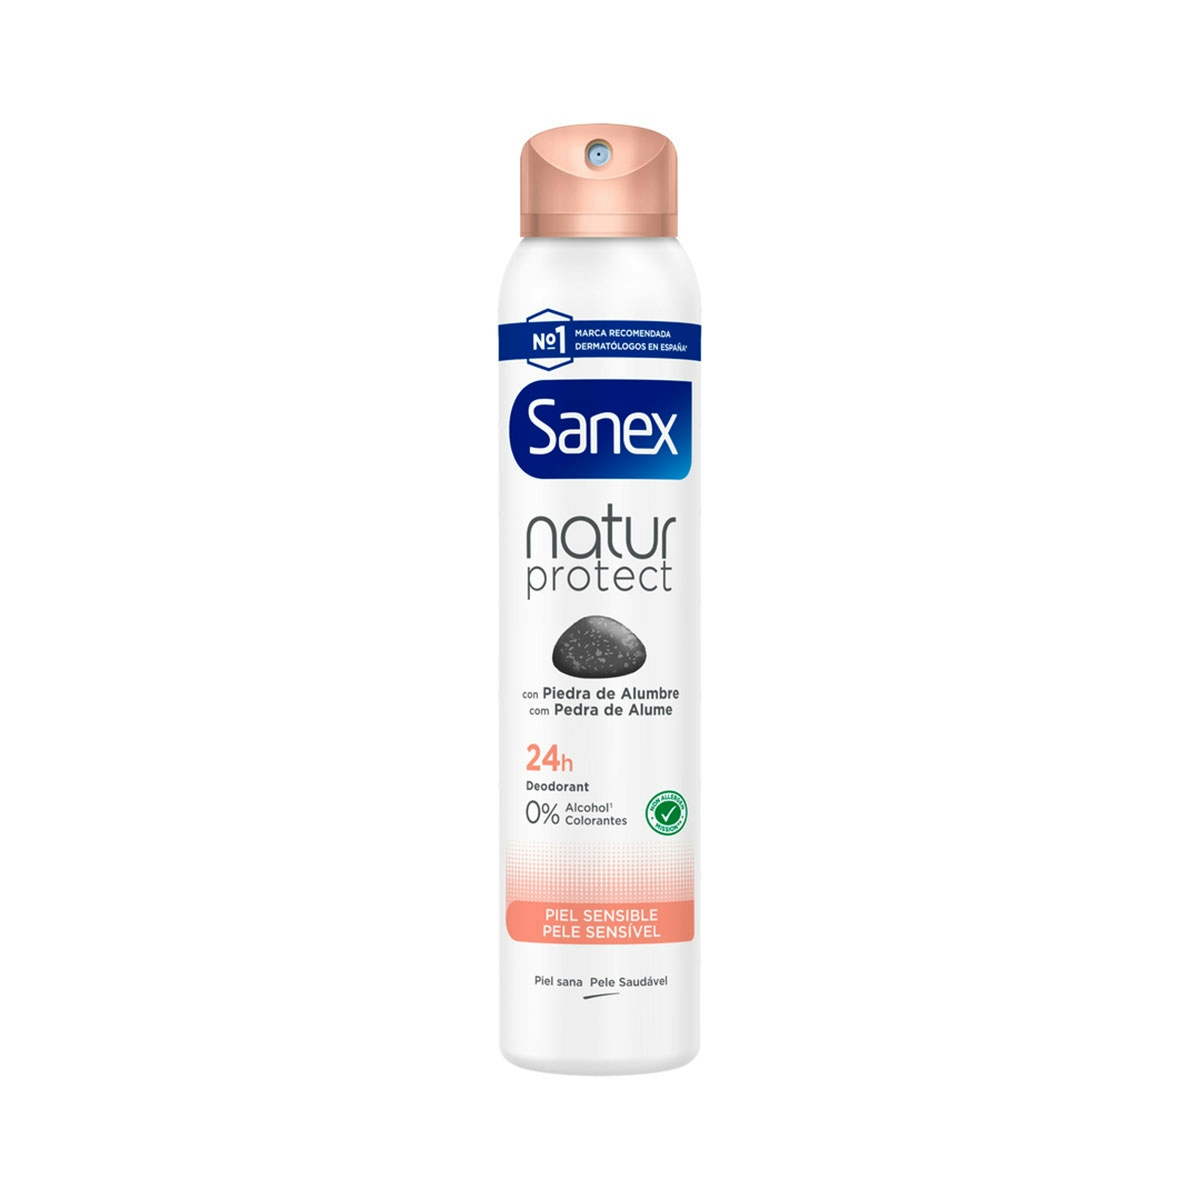 Desodorante spray Sanex Natur Protect piel sensible 24h con piedra de alumbre 200ml